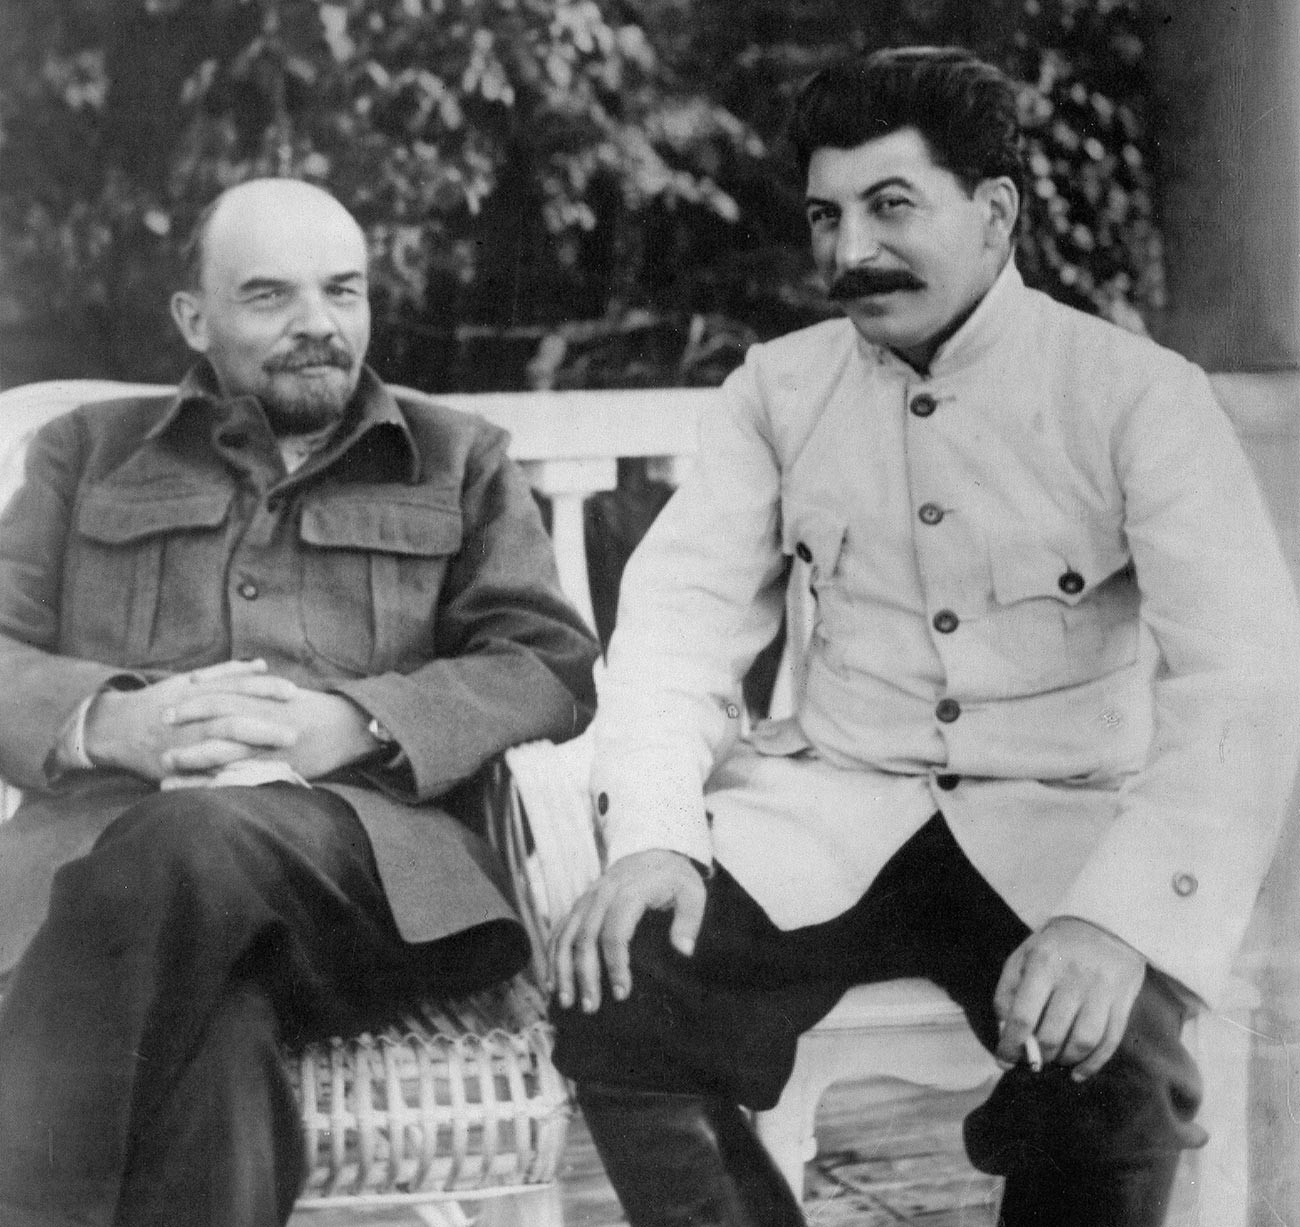 Lenin und Stalin